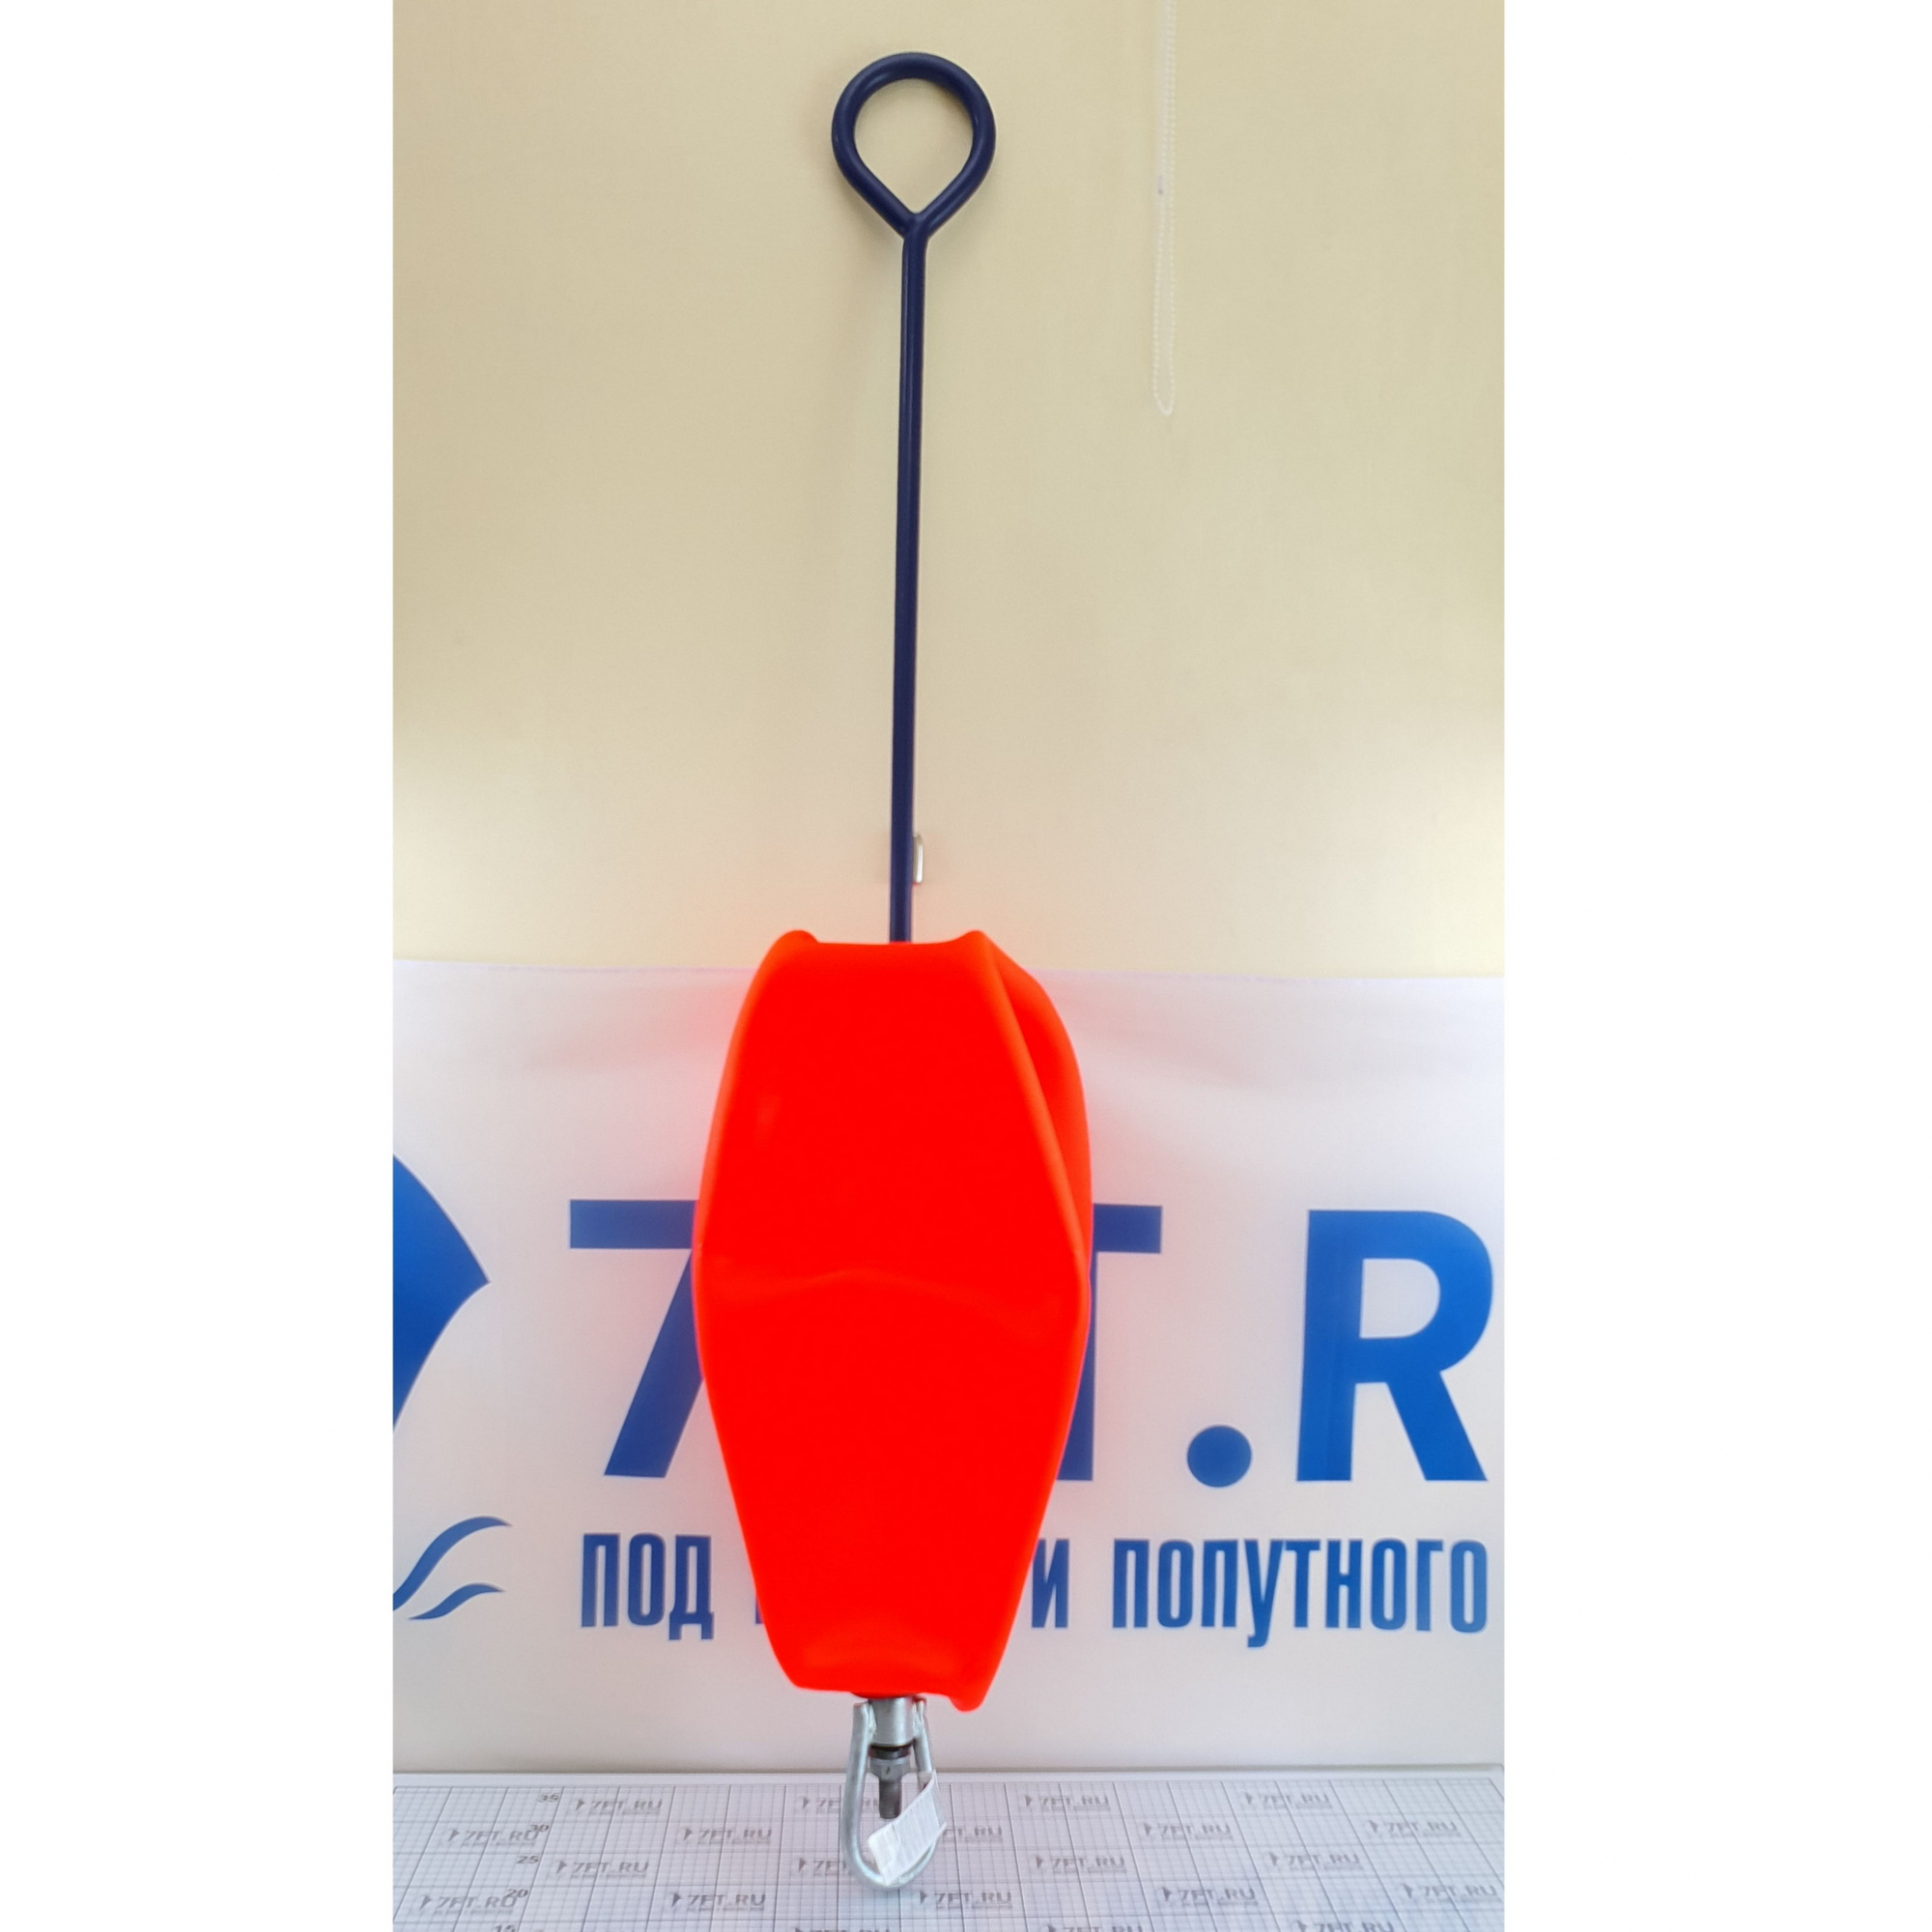 Купить Буй швартовый надувной красный Polyform CCD-4/04 97 кг 7ft.ru в интернет магазине Семь Футов